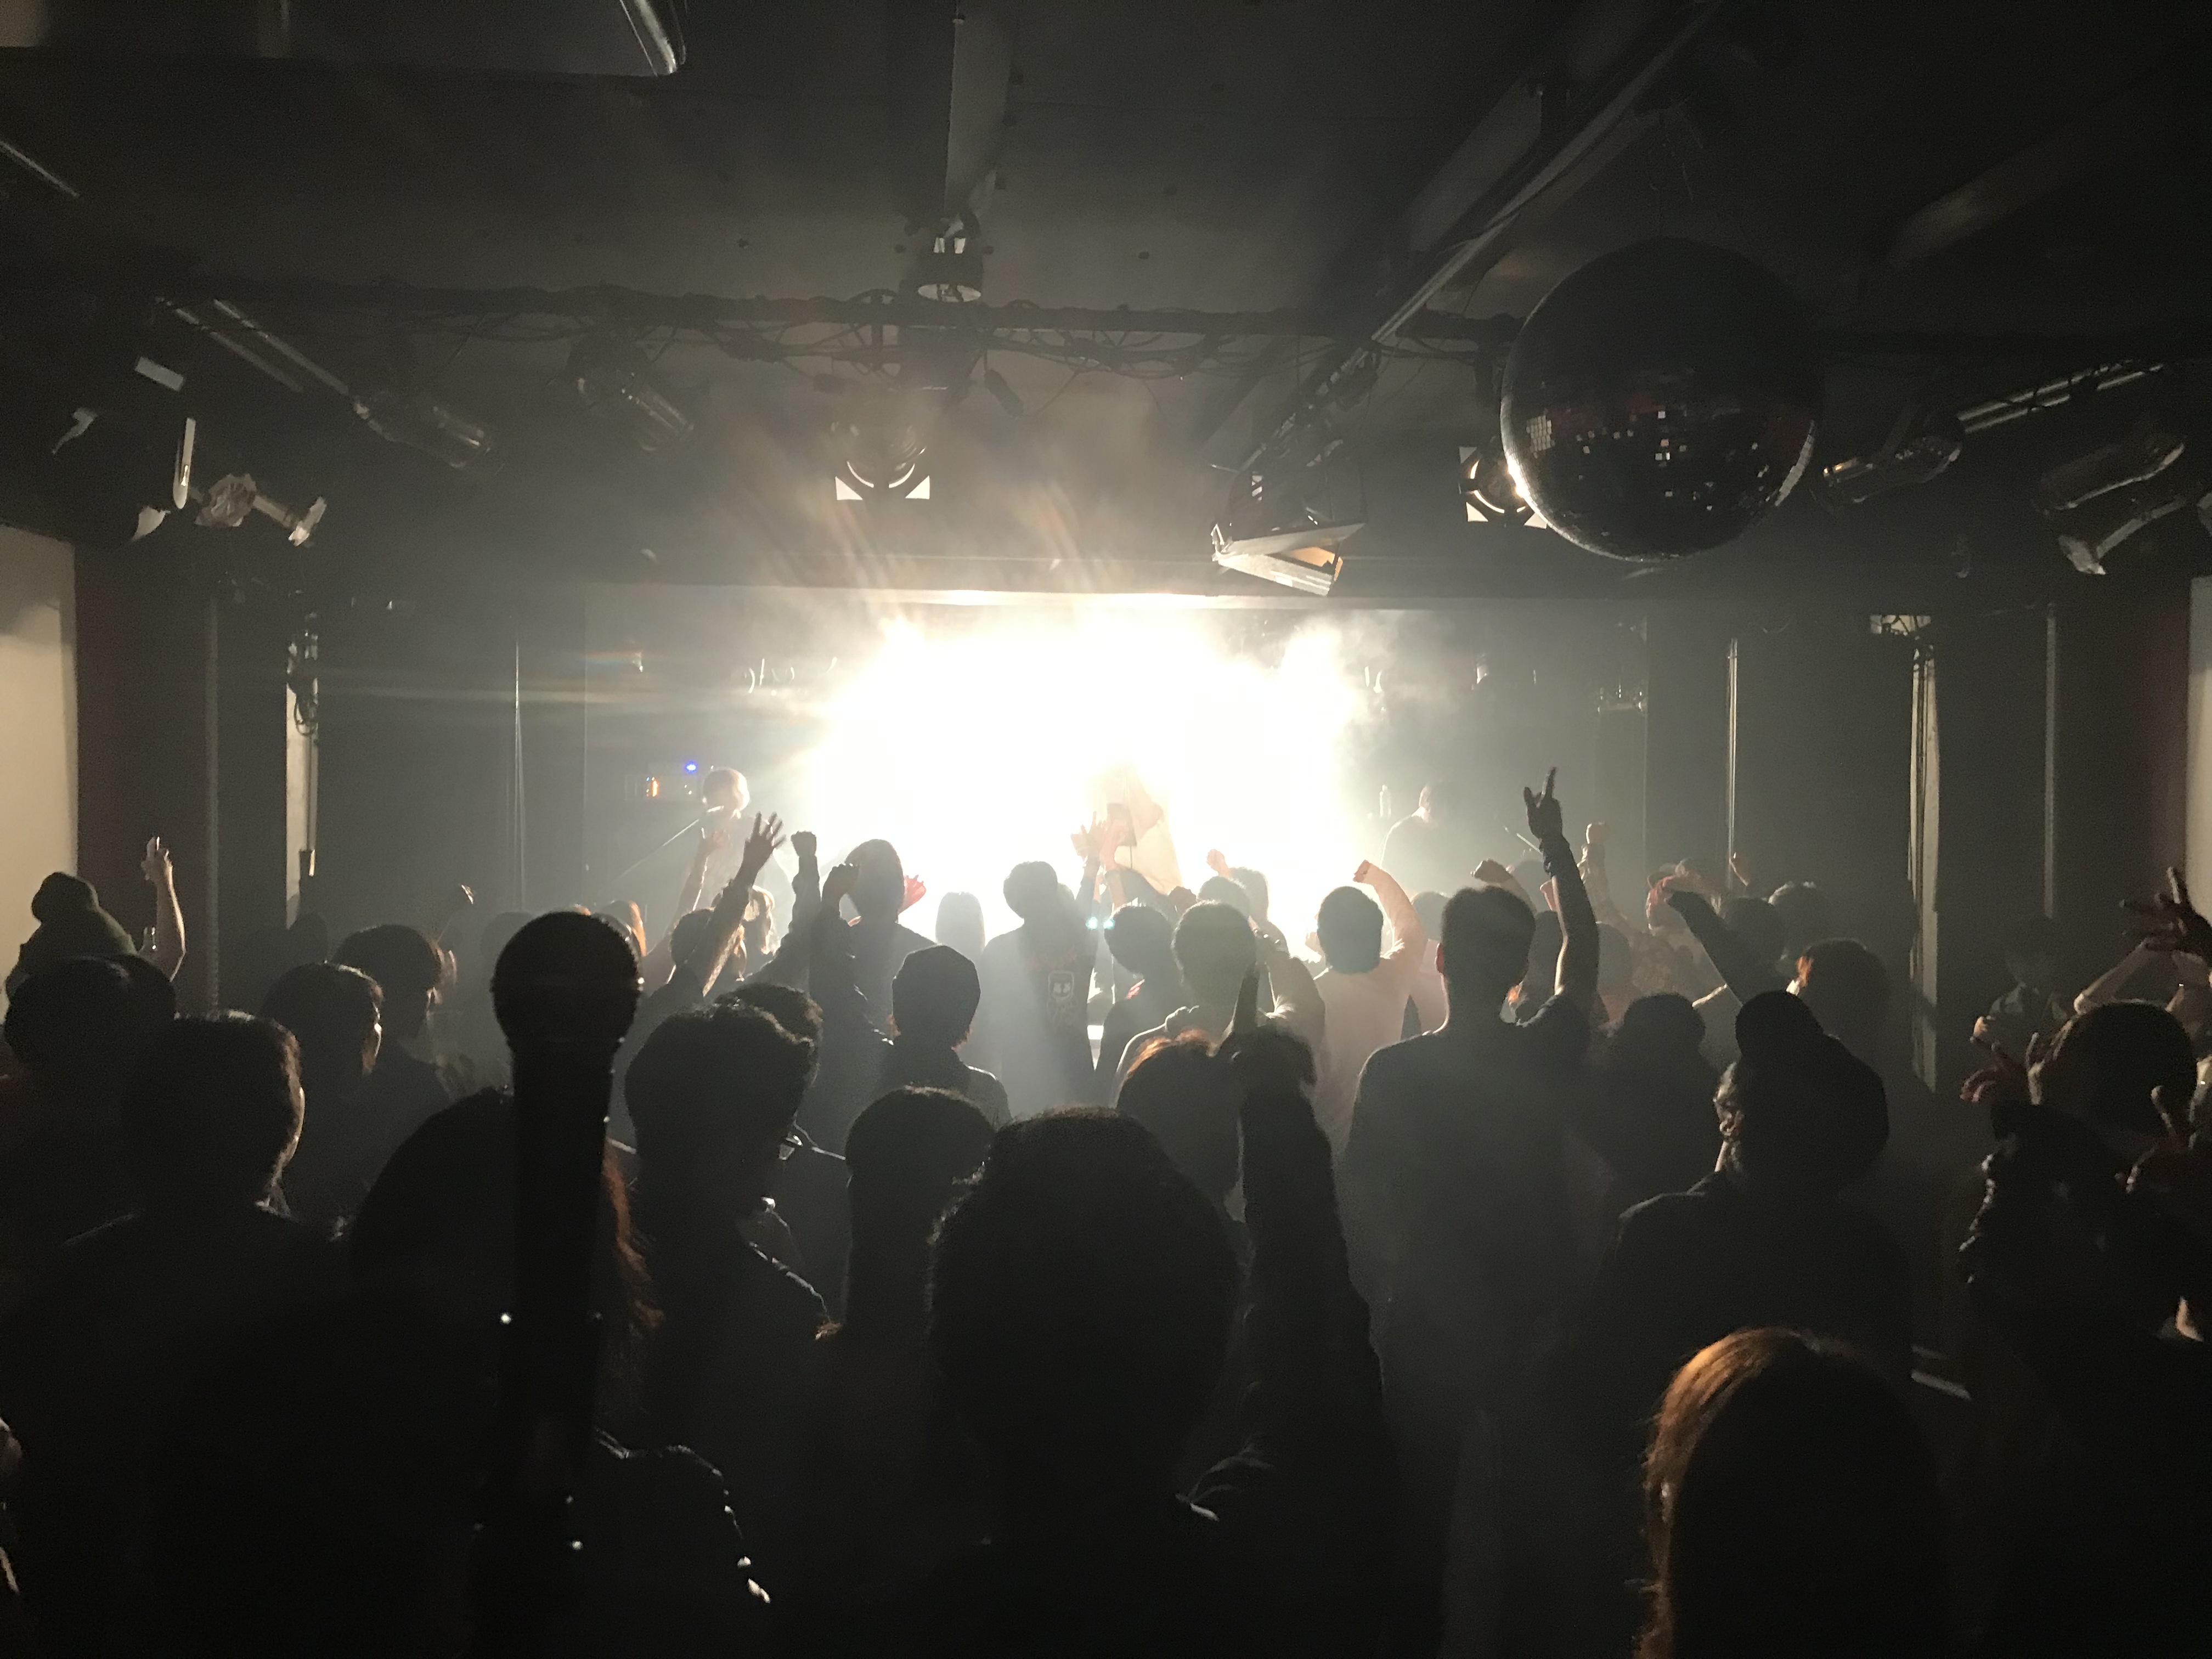 https://bar-rockaholic.jp/shibuya/blog/2019/04/25/A77E85DA-0718-4B14-A466-54947378F1AB.jpeg